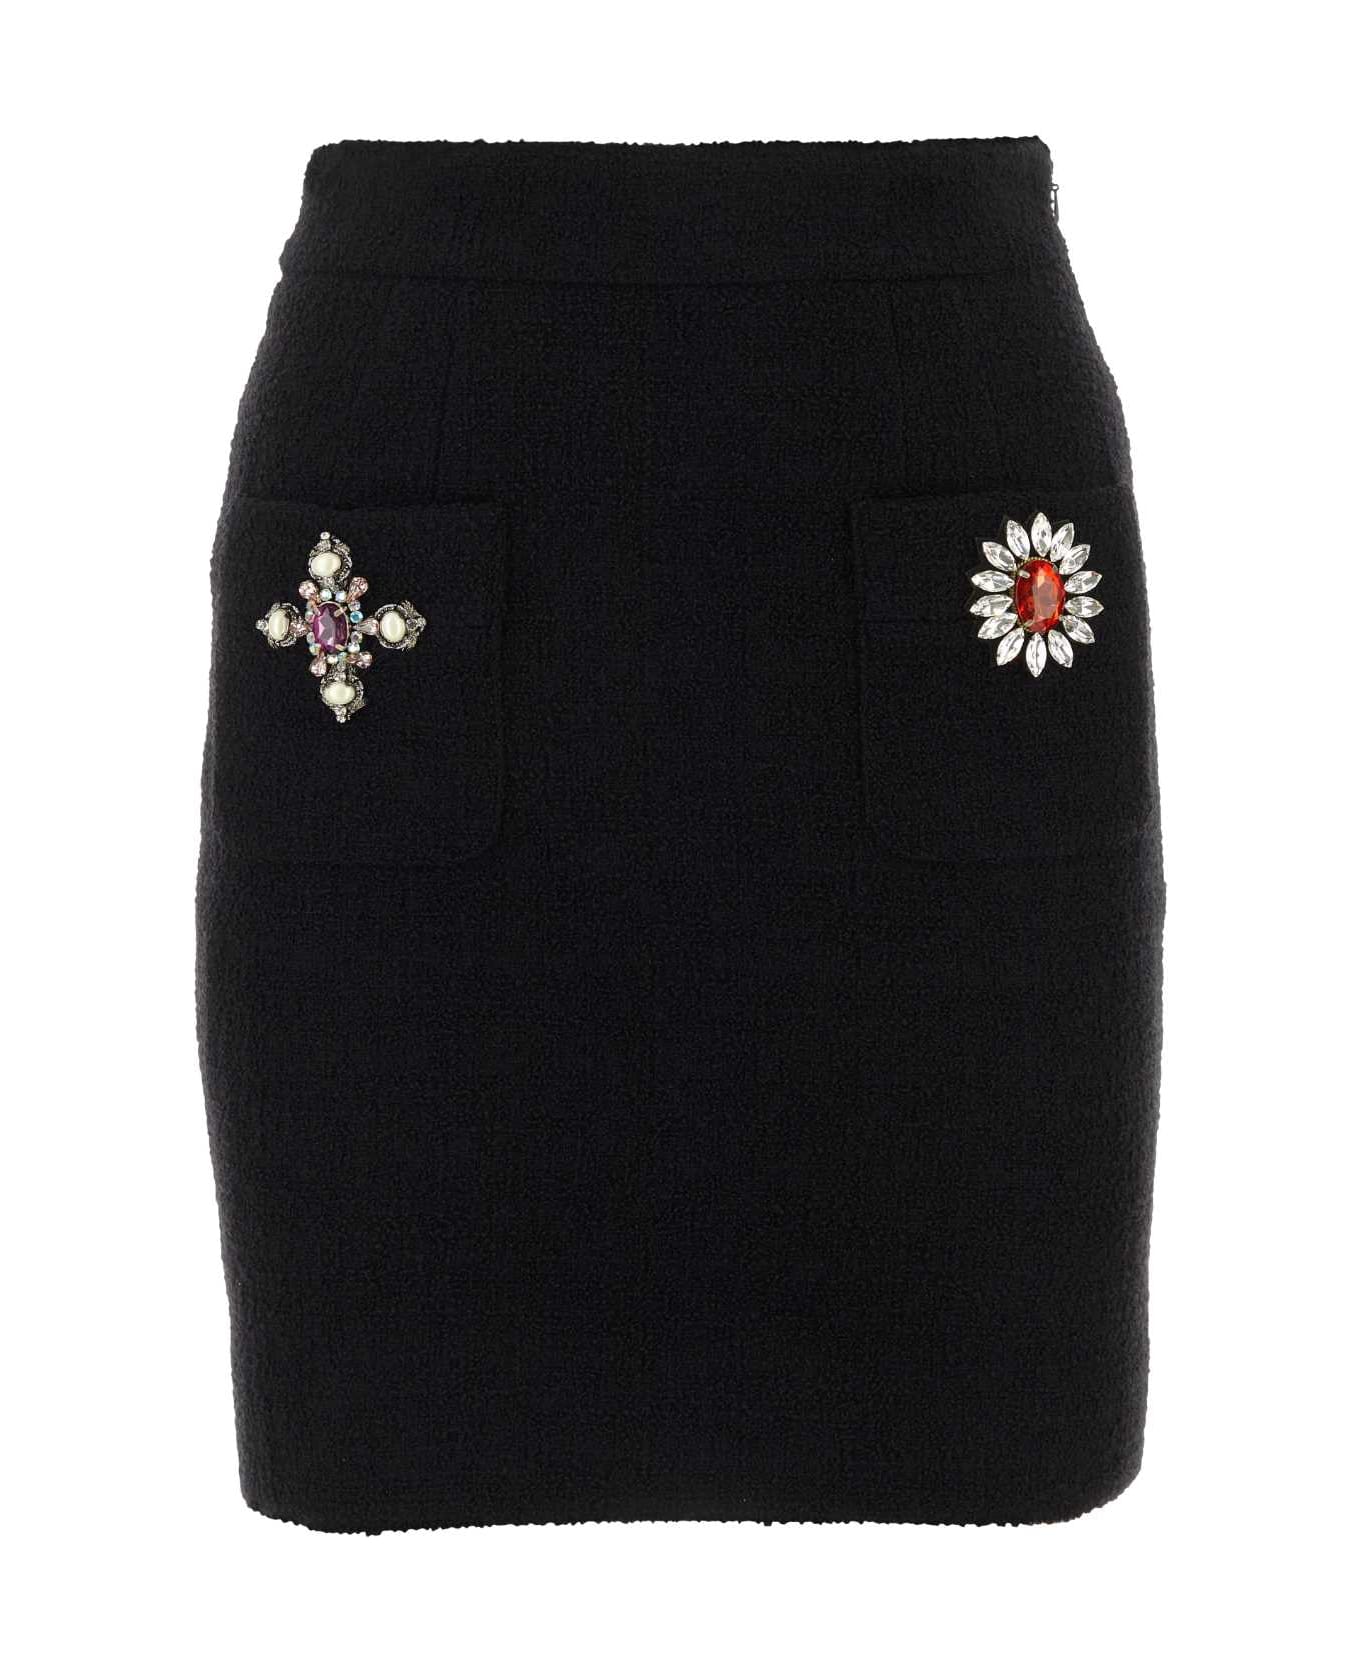 Moschino Black Wool Blend Miniskirt - NERO